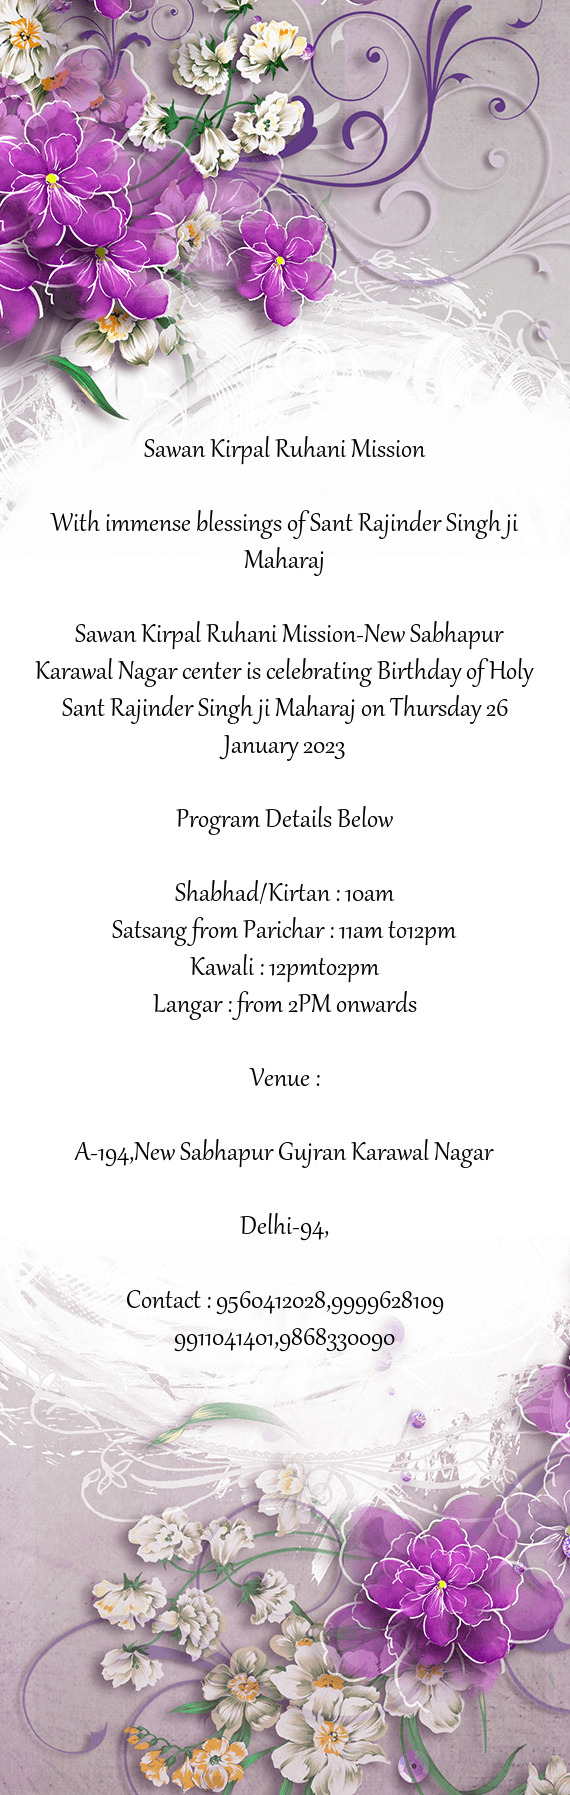 Program Details Below